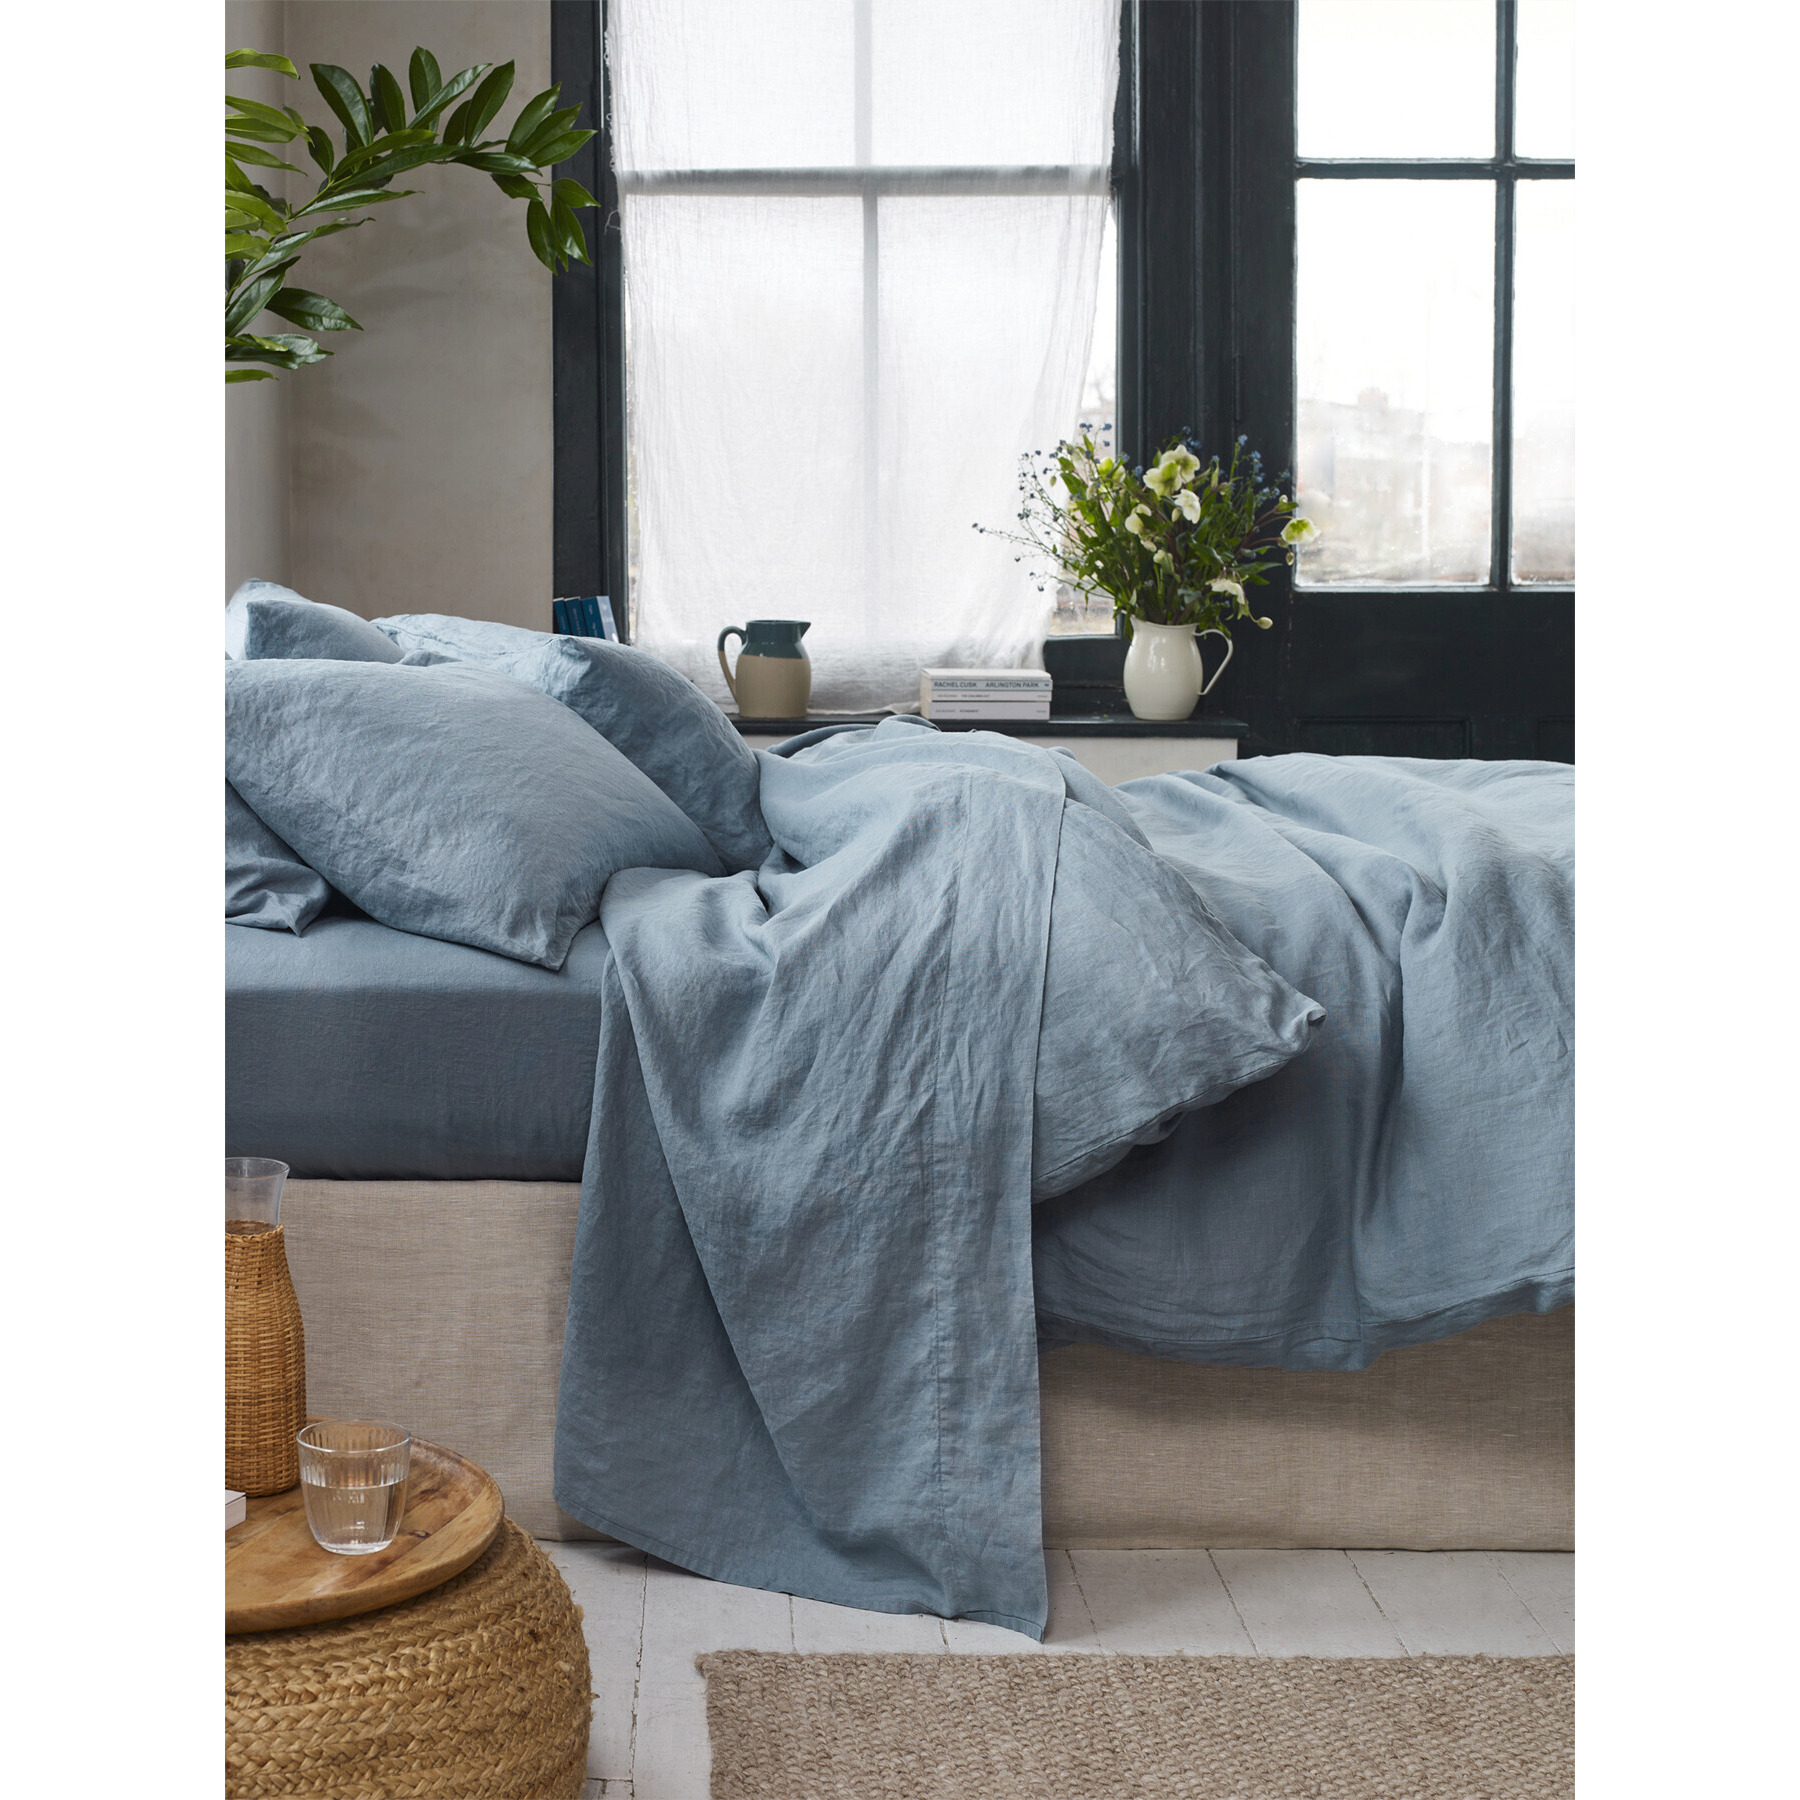 Piglet in Bed Linen Flat Sheet - Size Super King Blue - image 1